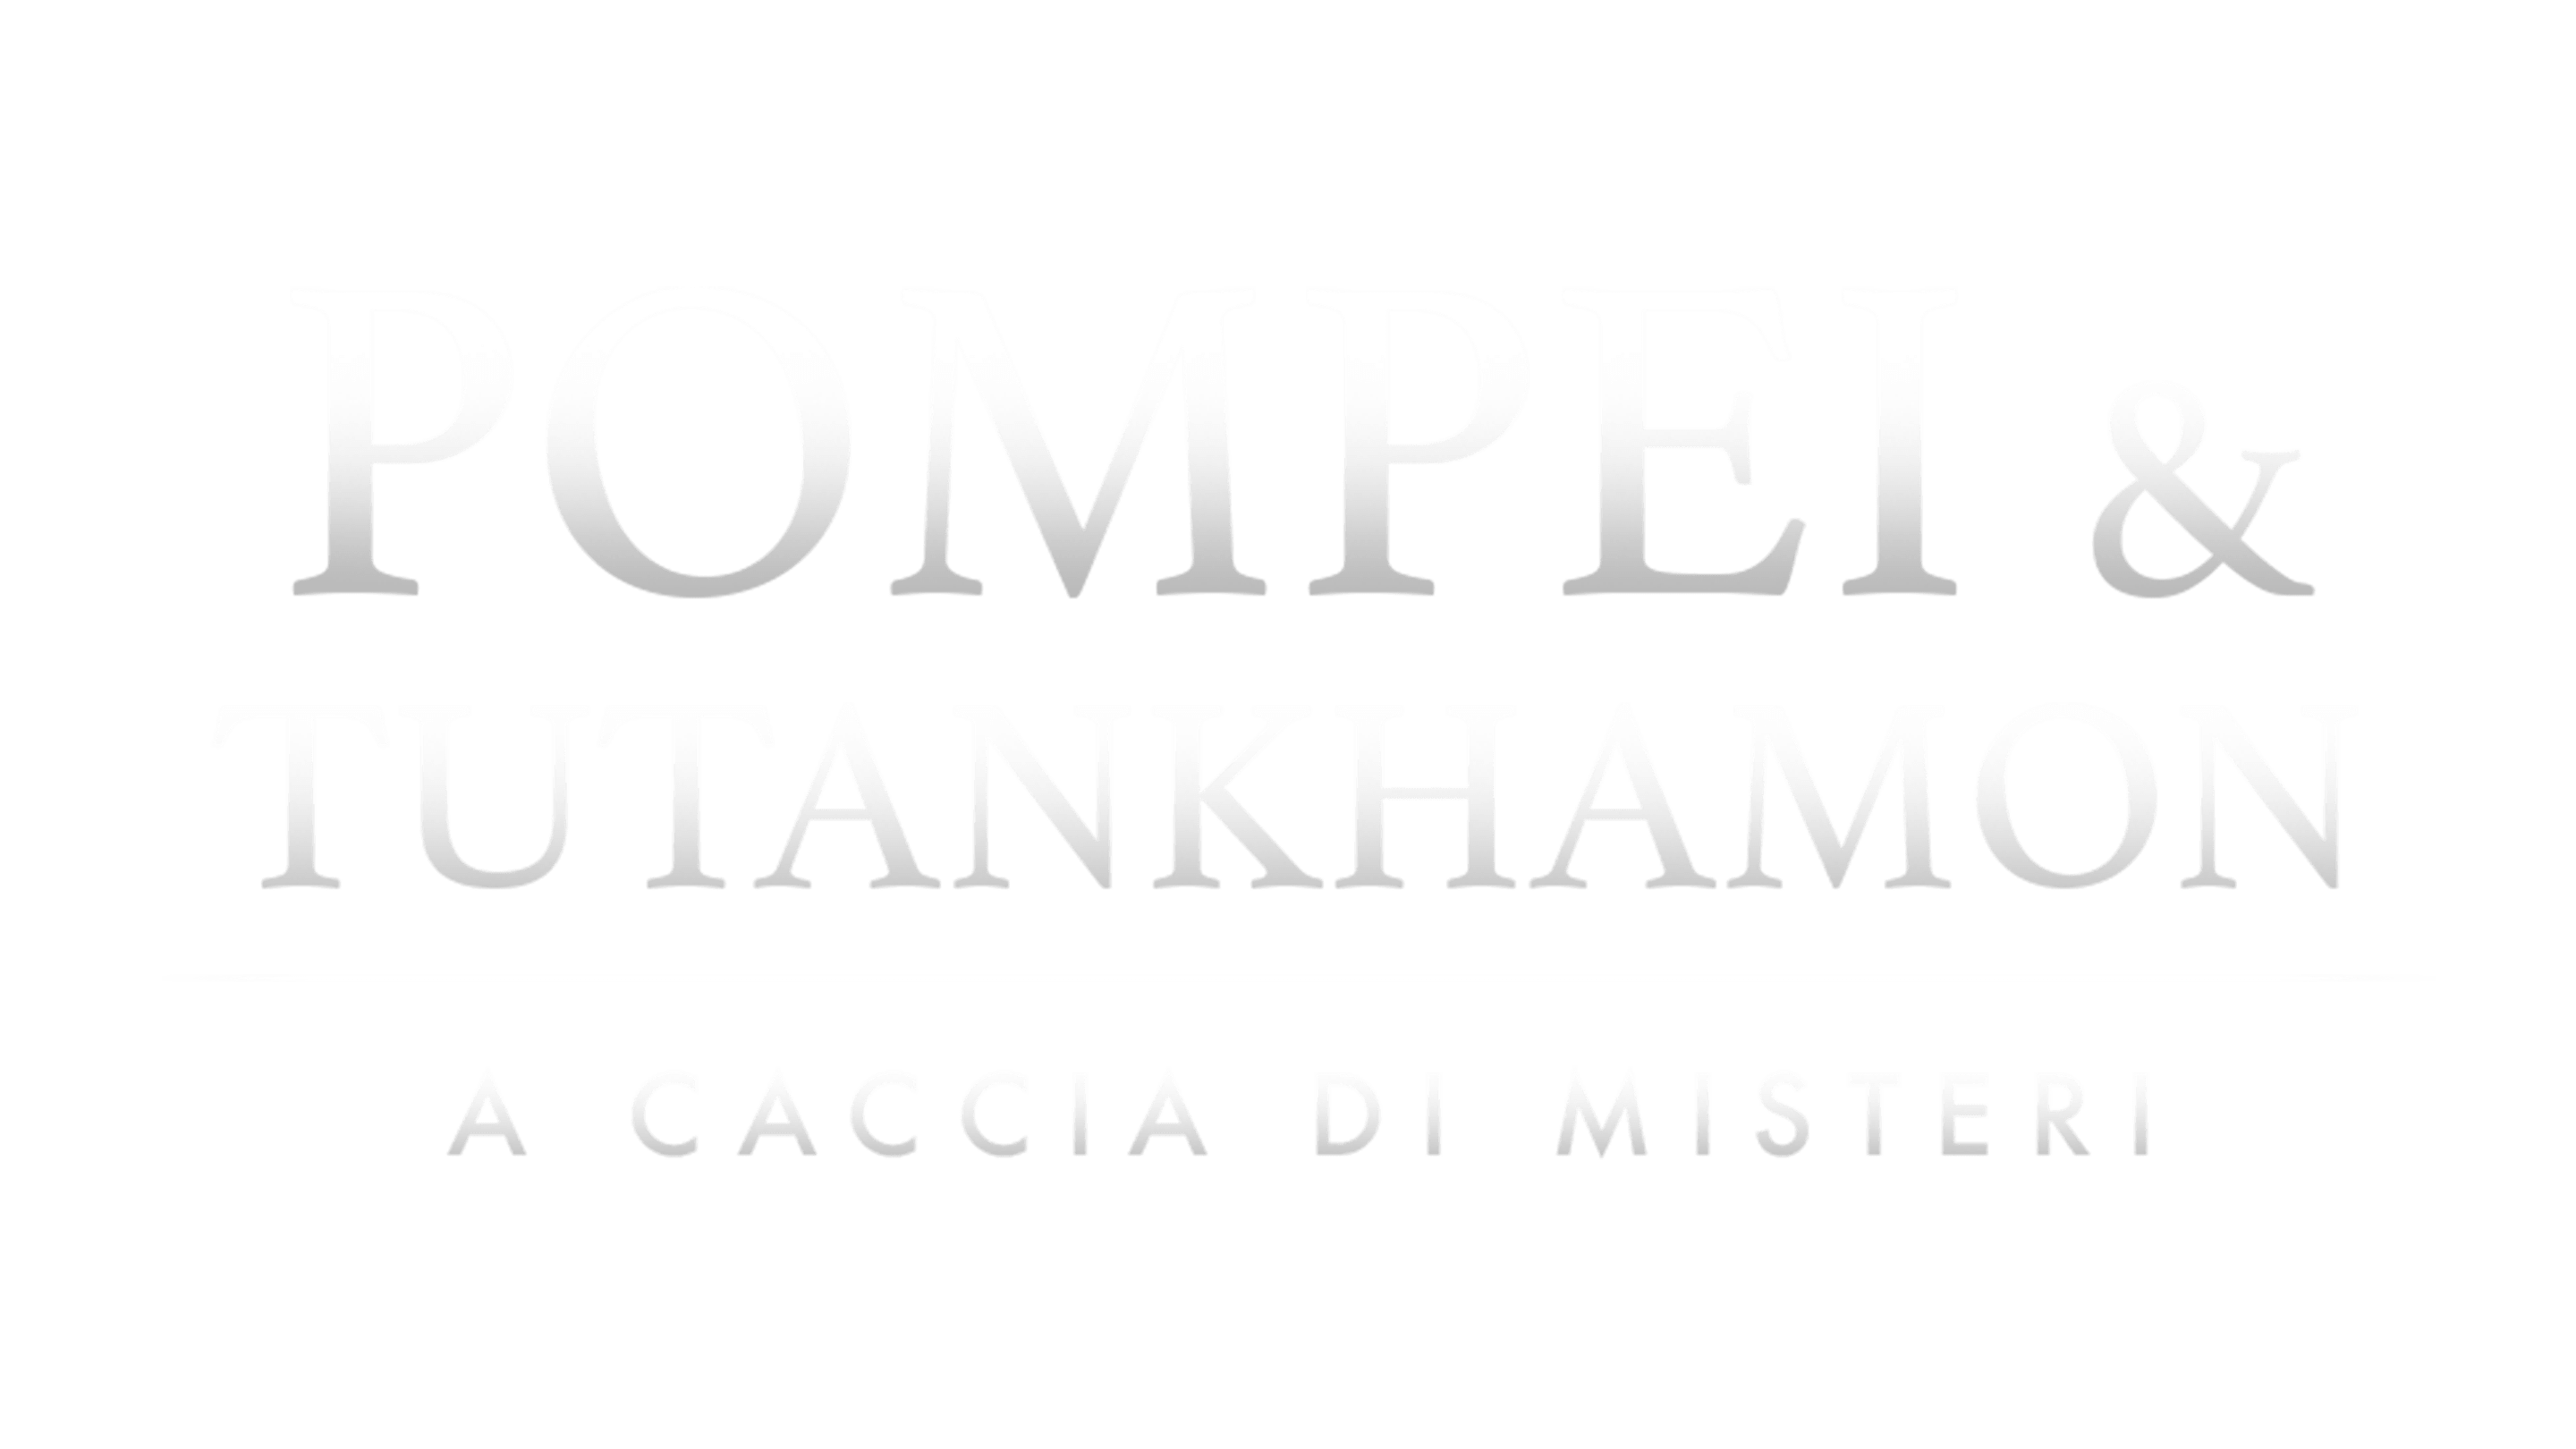 Pompei & Tutankhamon - A caccia di misteri